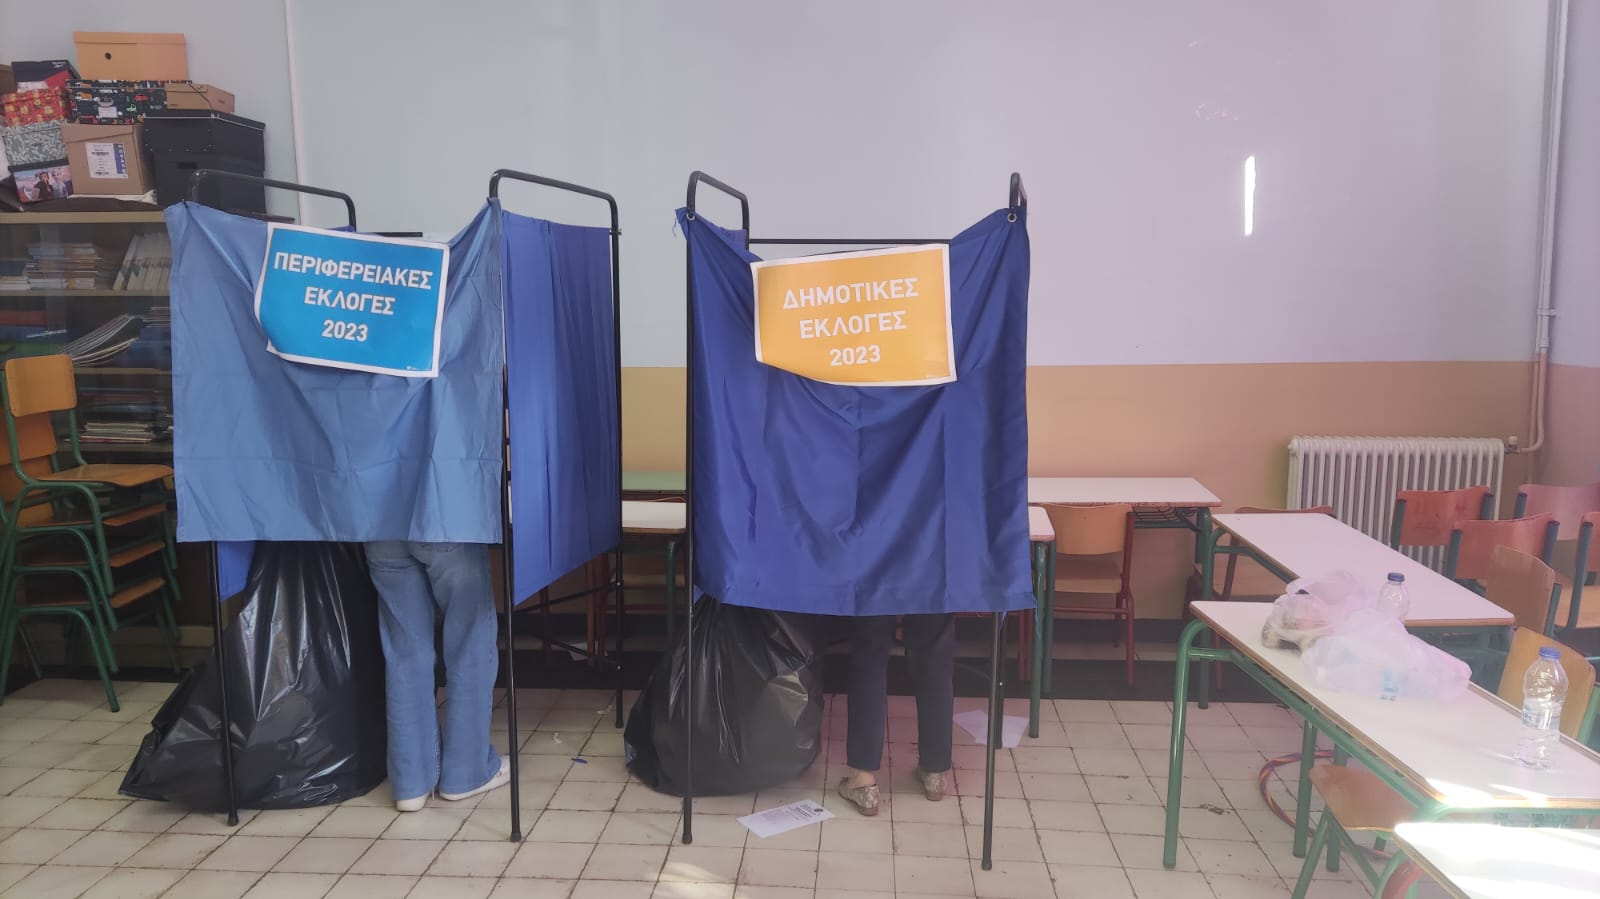 Πελοπόννησος: Κλέβοντας, δέρνοντας και δωροδοκώντας για μία ψήφο